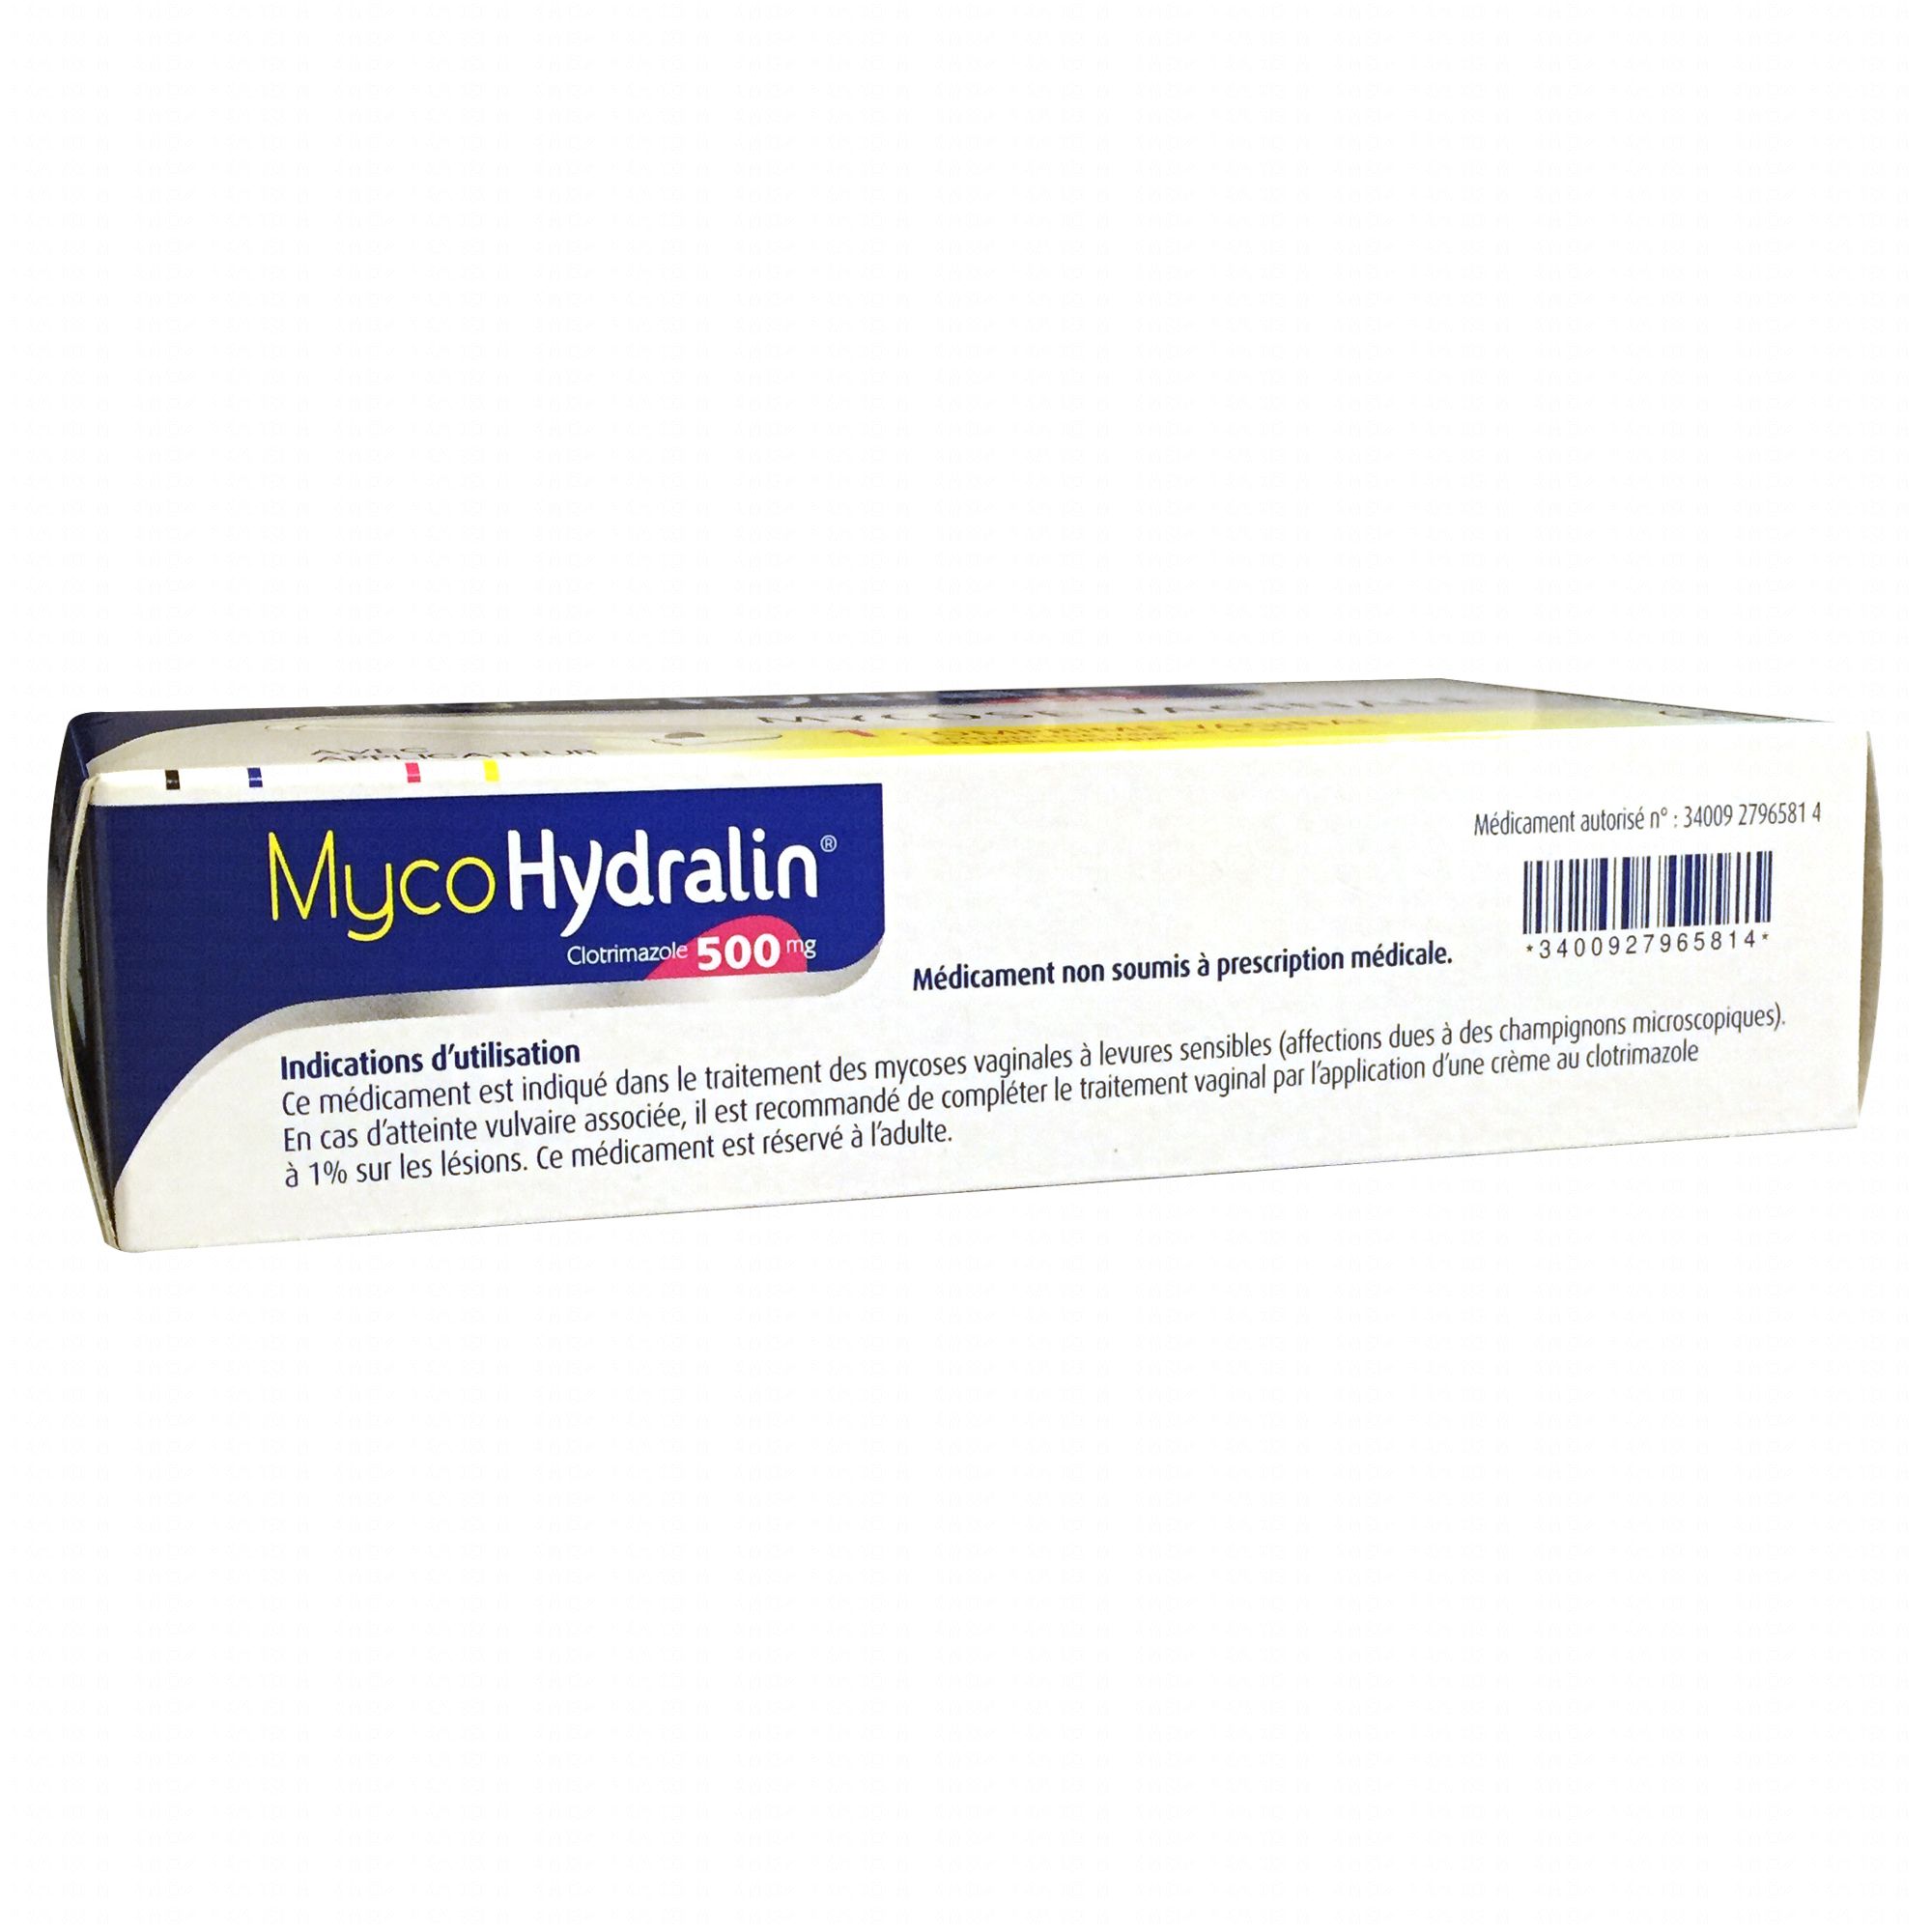 Myco Hydralin 500mg 1 comprimé vaginal